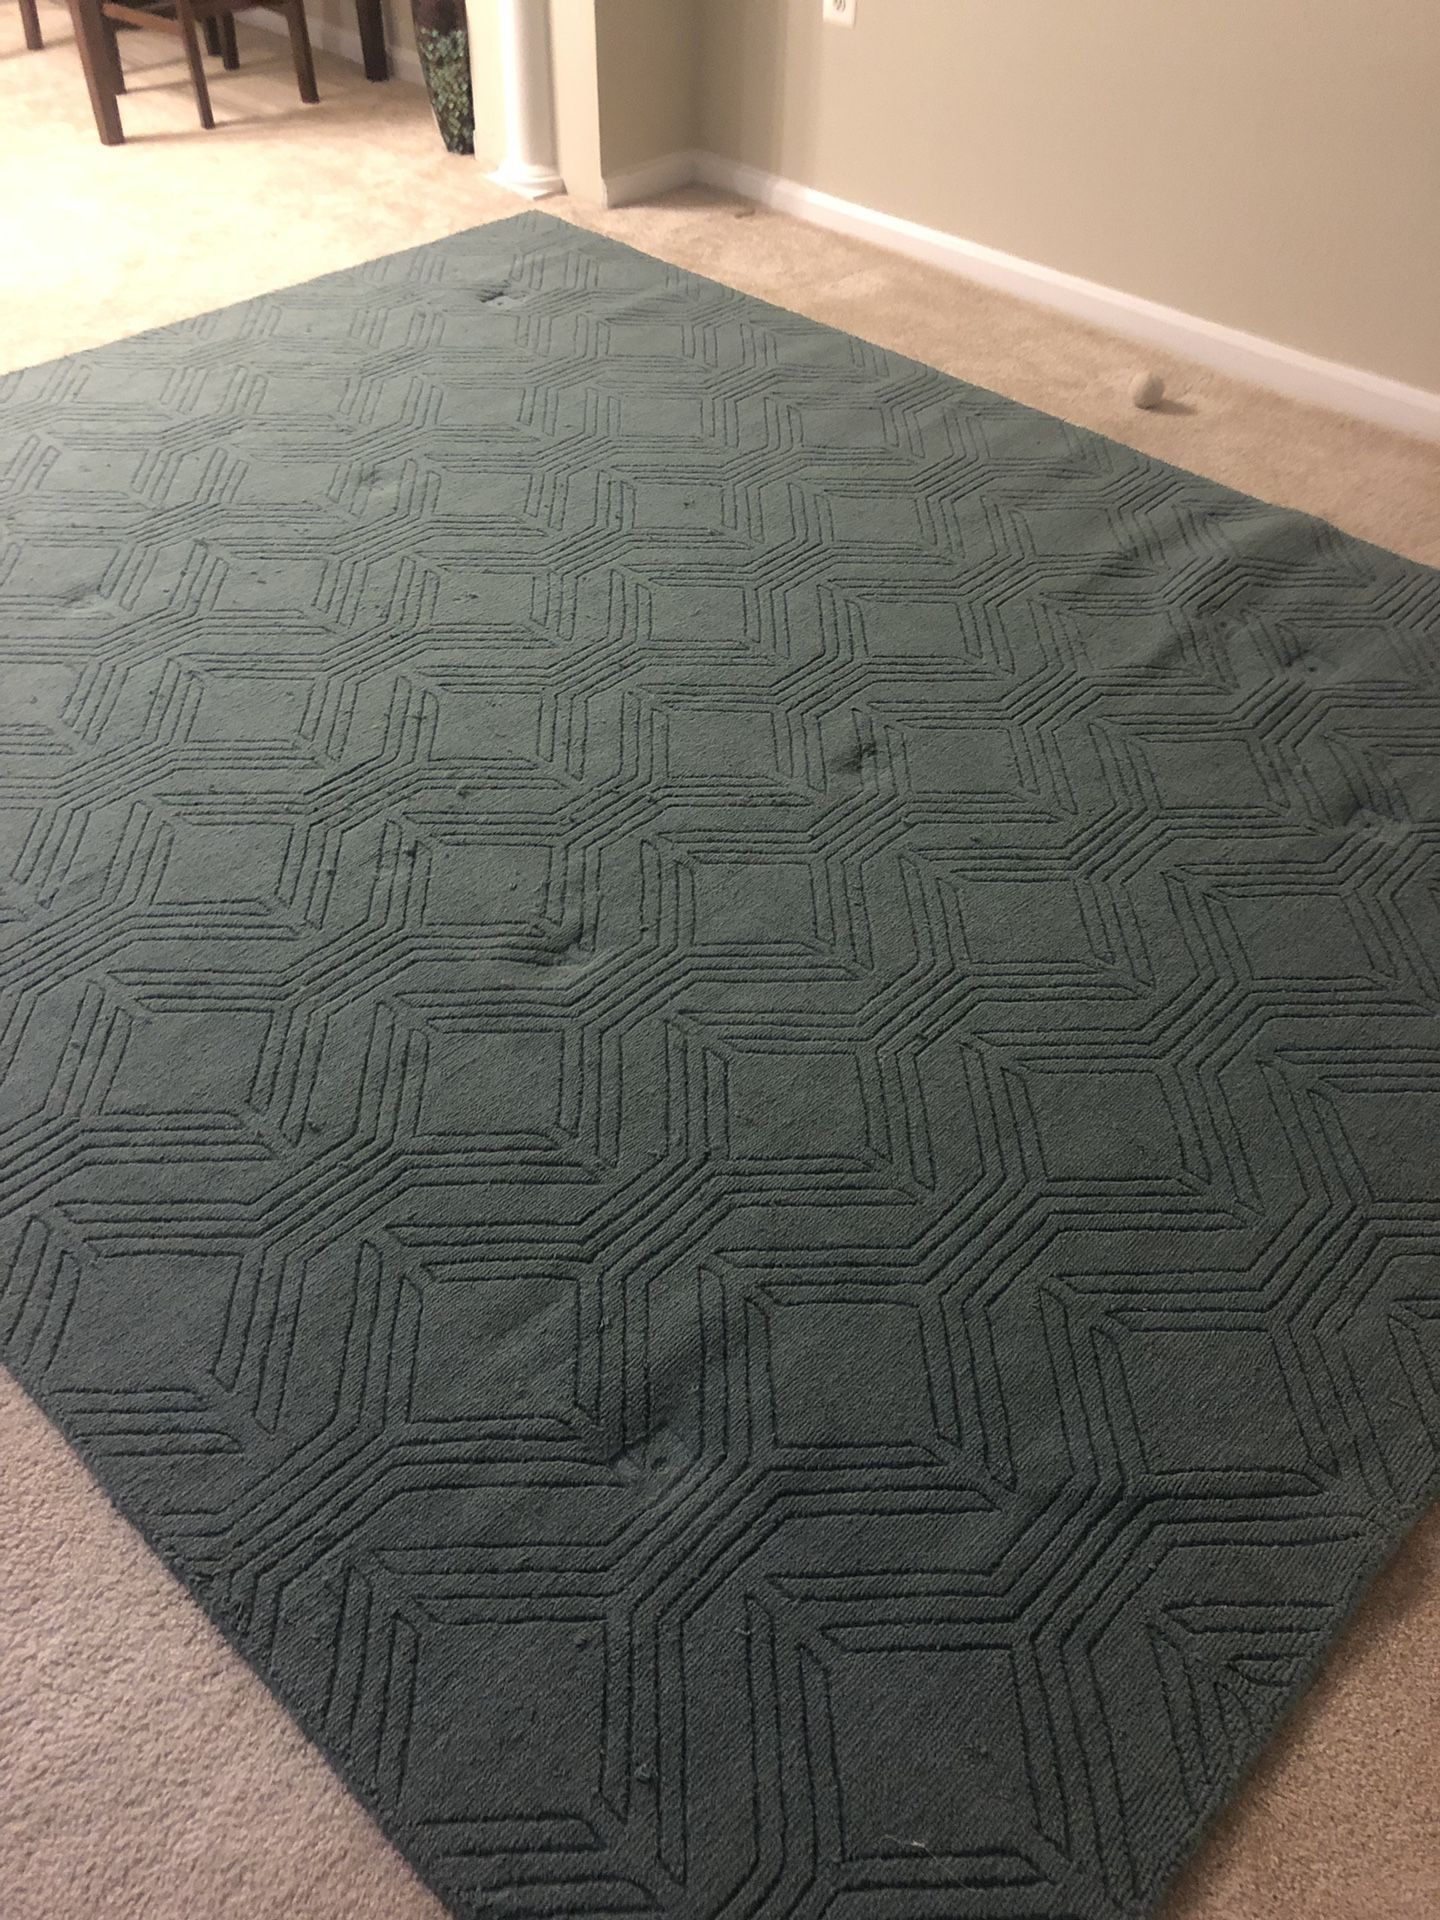 8 x 10 area rug